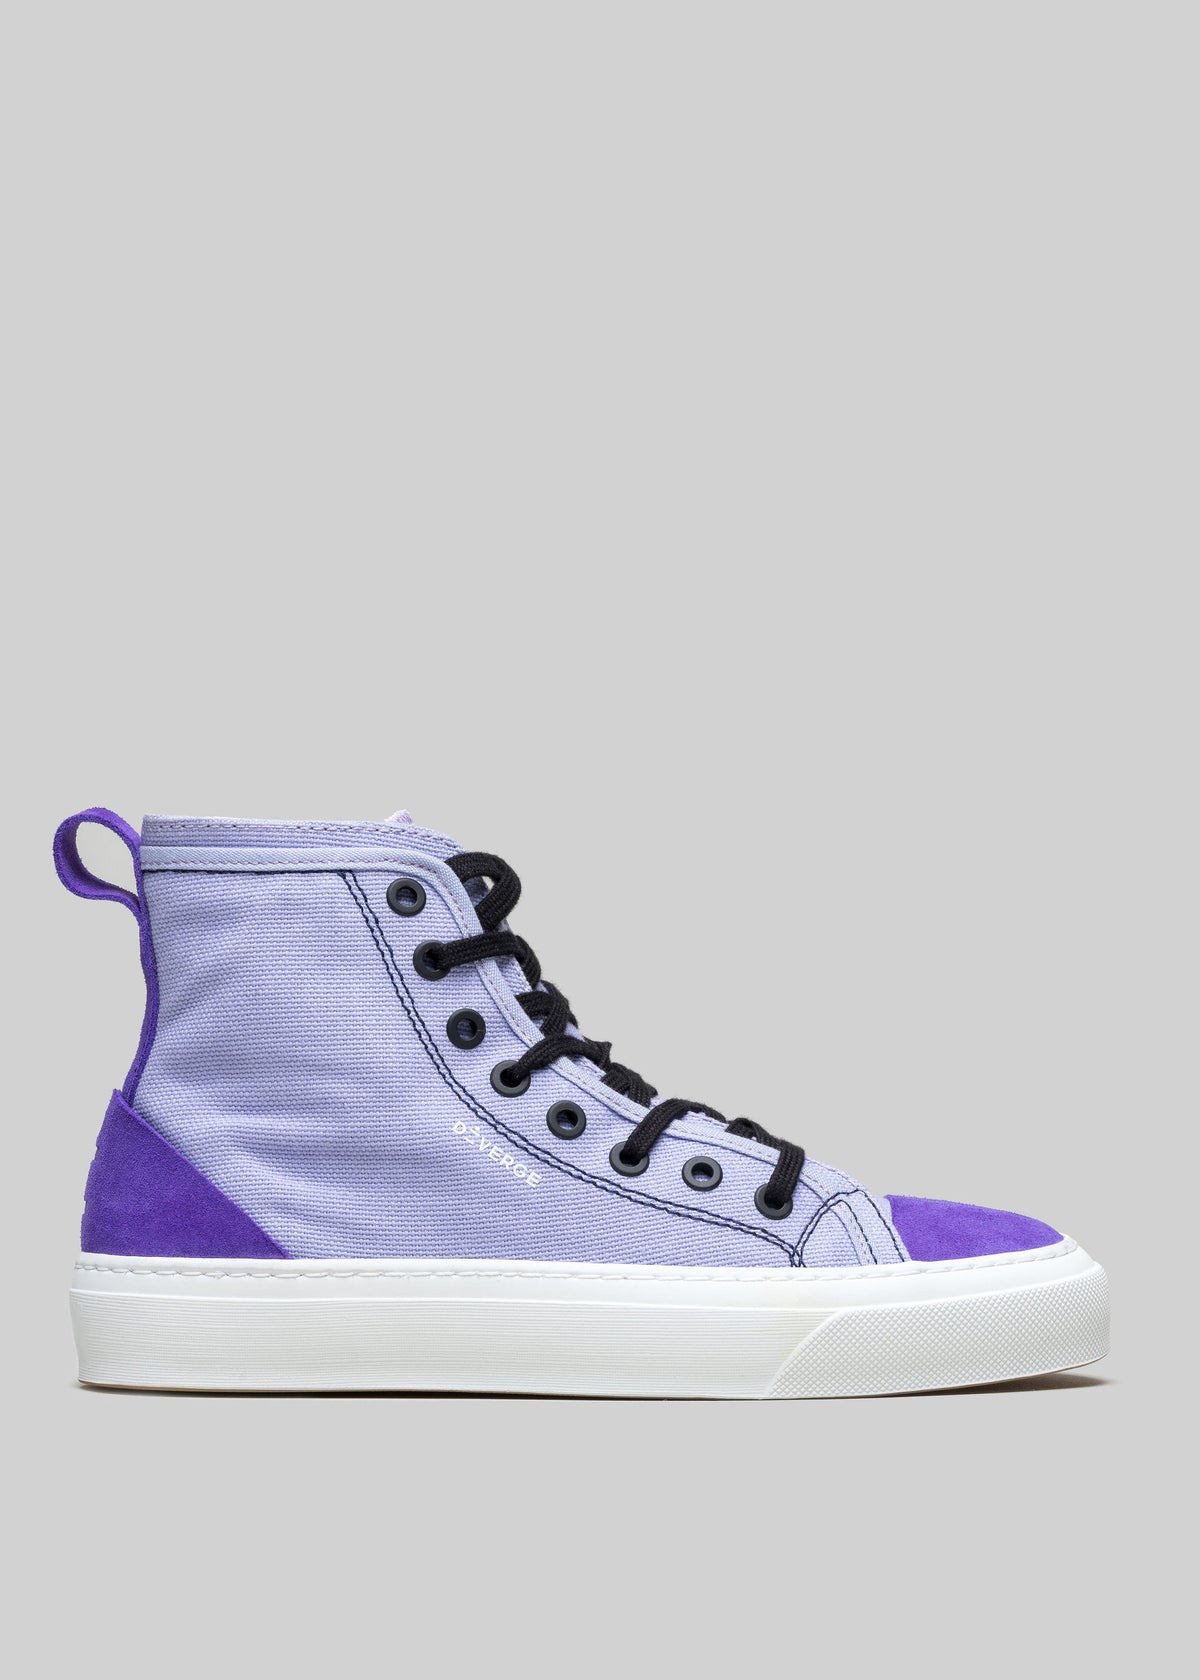 Chaussure montante TH0001 by Leandra avec un bout et une semelle blancs, des lacets noirs et une bordure violette distincte autour de la partie inférieure, parfaite comme chaussure personnalisée pour un style unique.